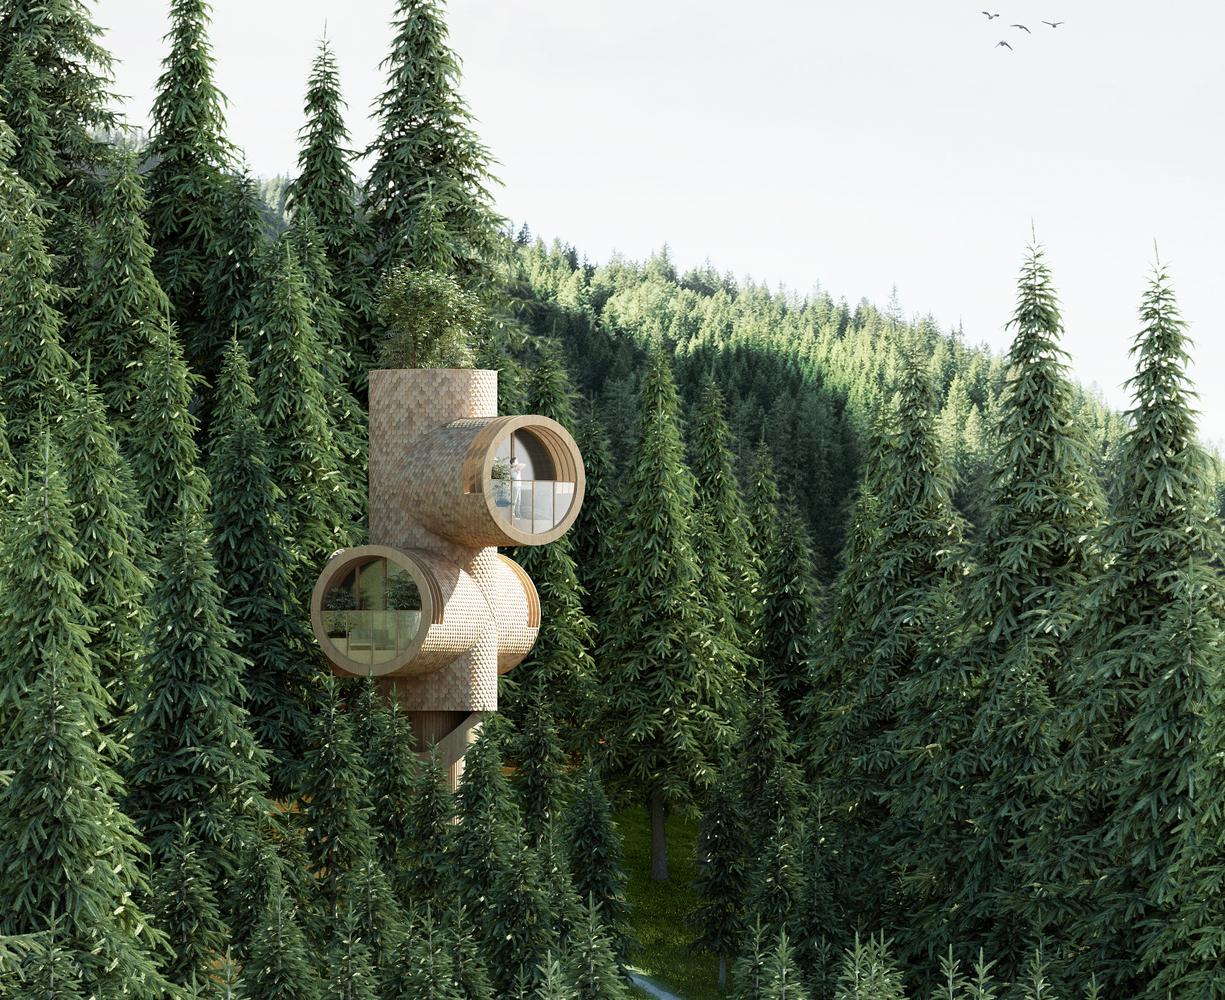 【透過小孩視角體驗建築】迷你樹屋融入自然生活